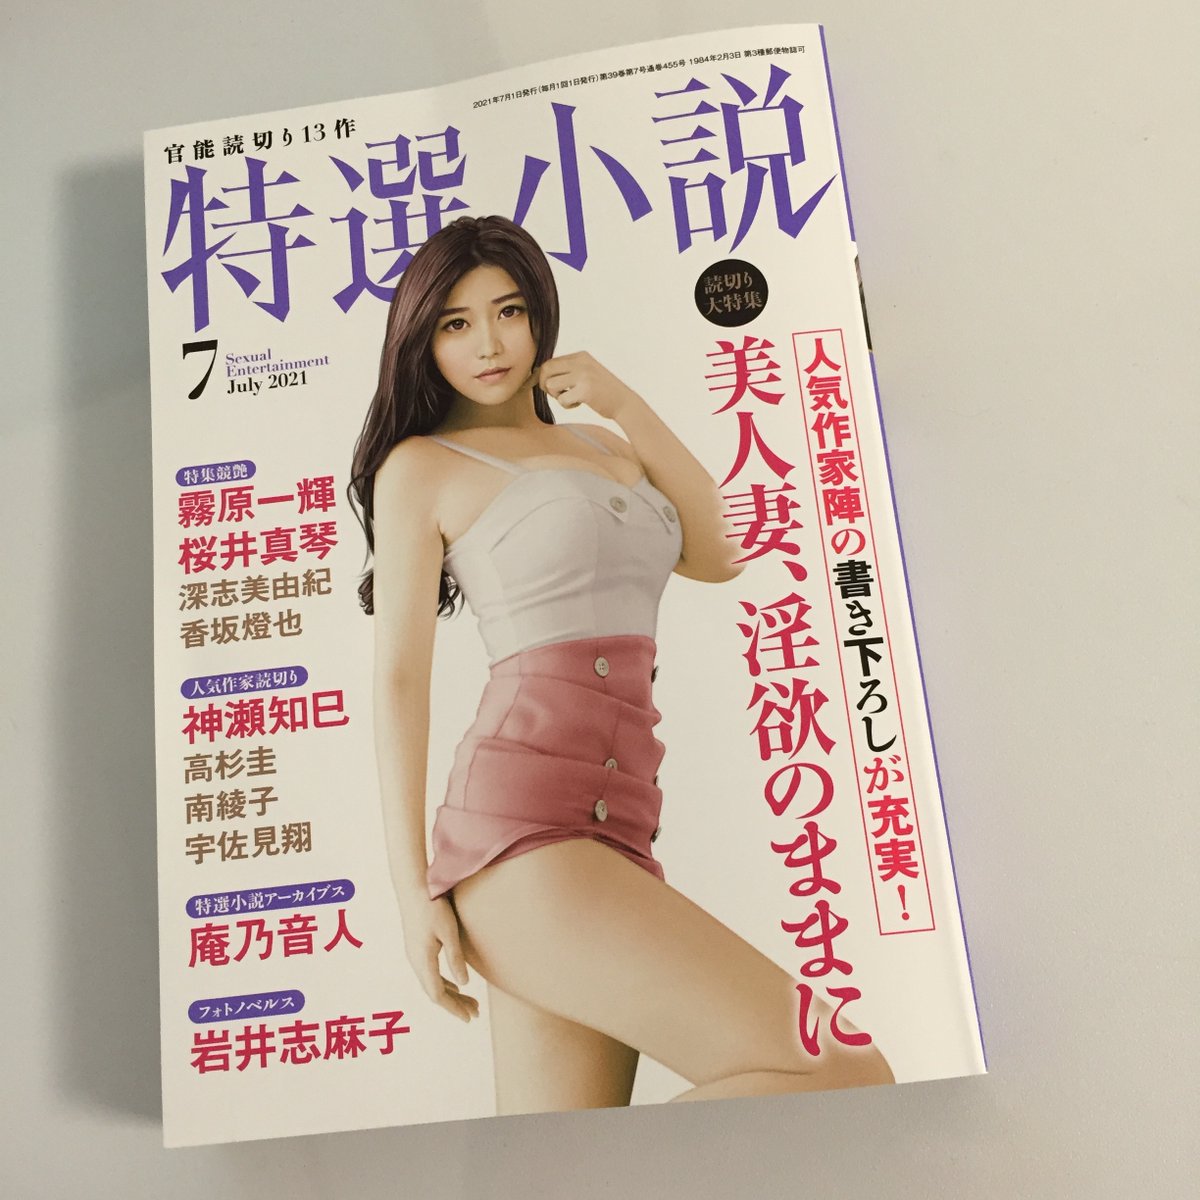 只今発売中の「特選小説7月号」@tokusennsyosetsu
庵乃音人先生の『特選小説アーカイブス・隣の美少年」挿絵を描きました。人妻と少年の道ならぬ恋。ピンク映画を見ているような、読後感。とても切ないお話ですごく好きです。
ぜひお読みください! 